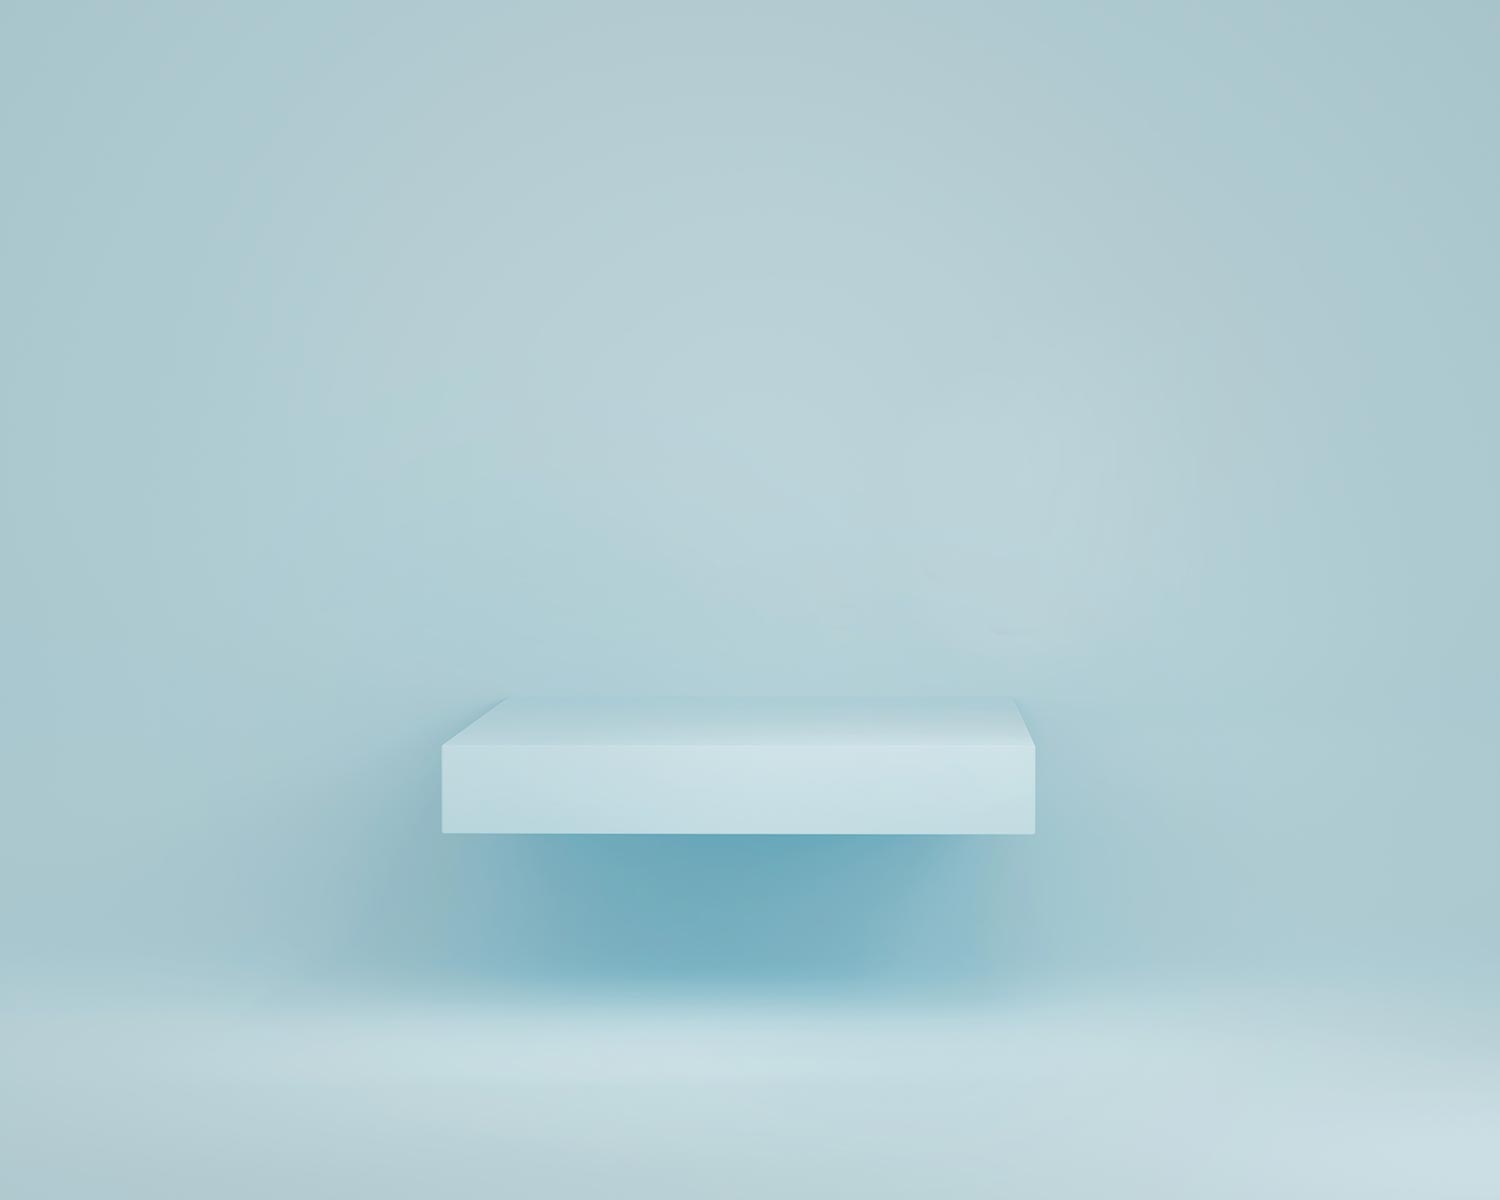 Blue simple minimalist background shelf pedesta